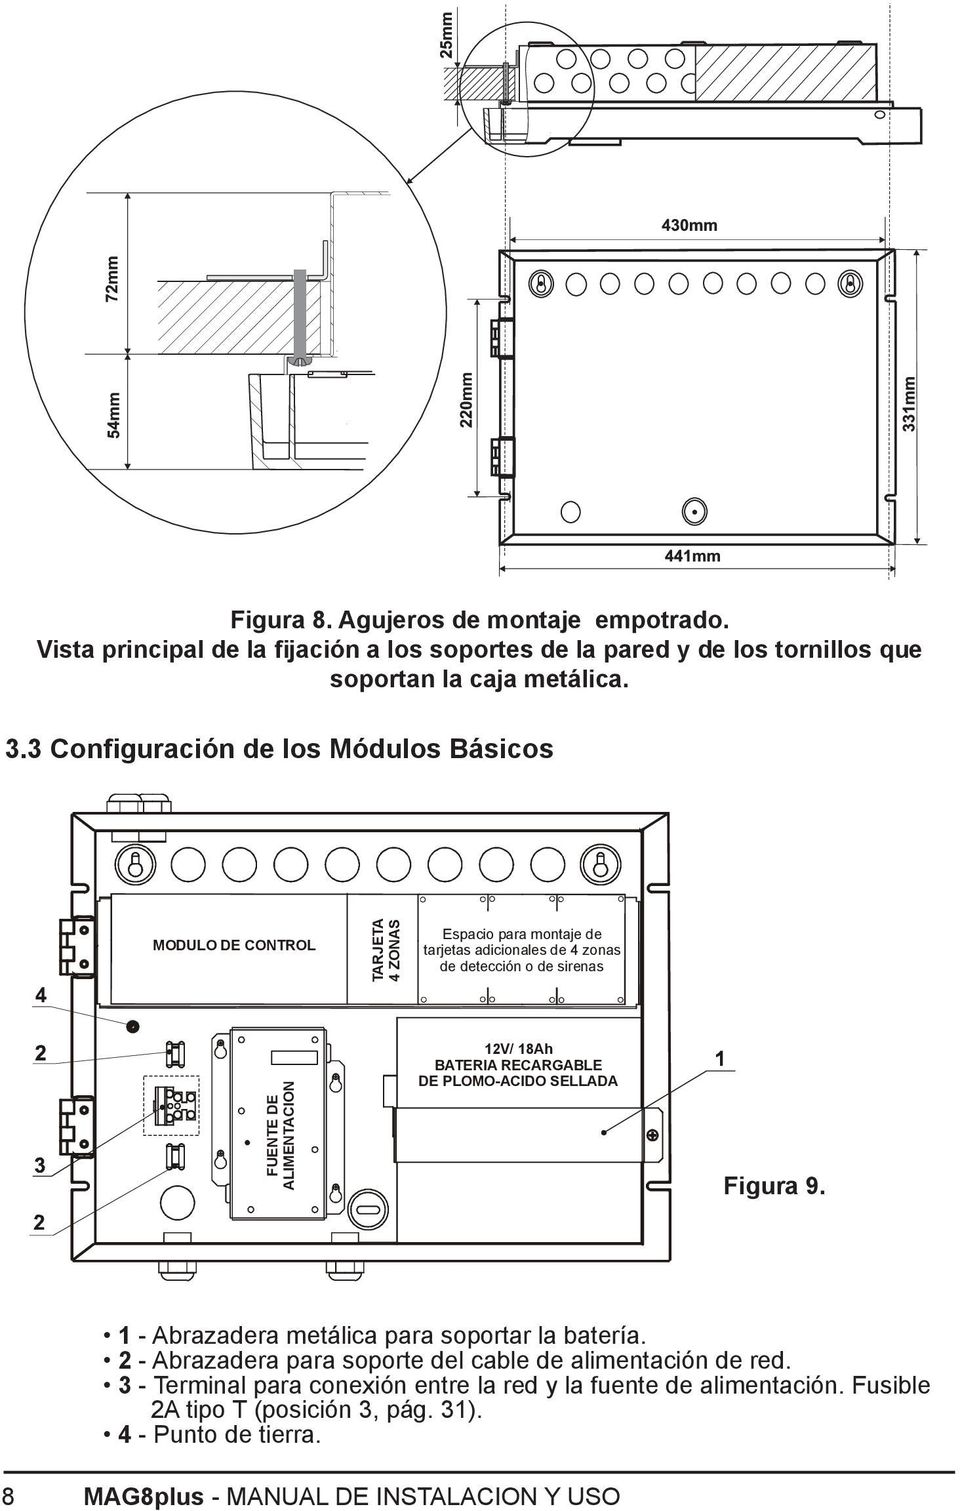 ALIMENTACION 12V/ 18Ah BATERIA RECARGABLE DE PLOMO-ACIDO SELLADA Figura 9. 1 - Abrazadera metálica para soportar la batería.